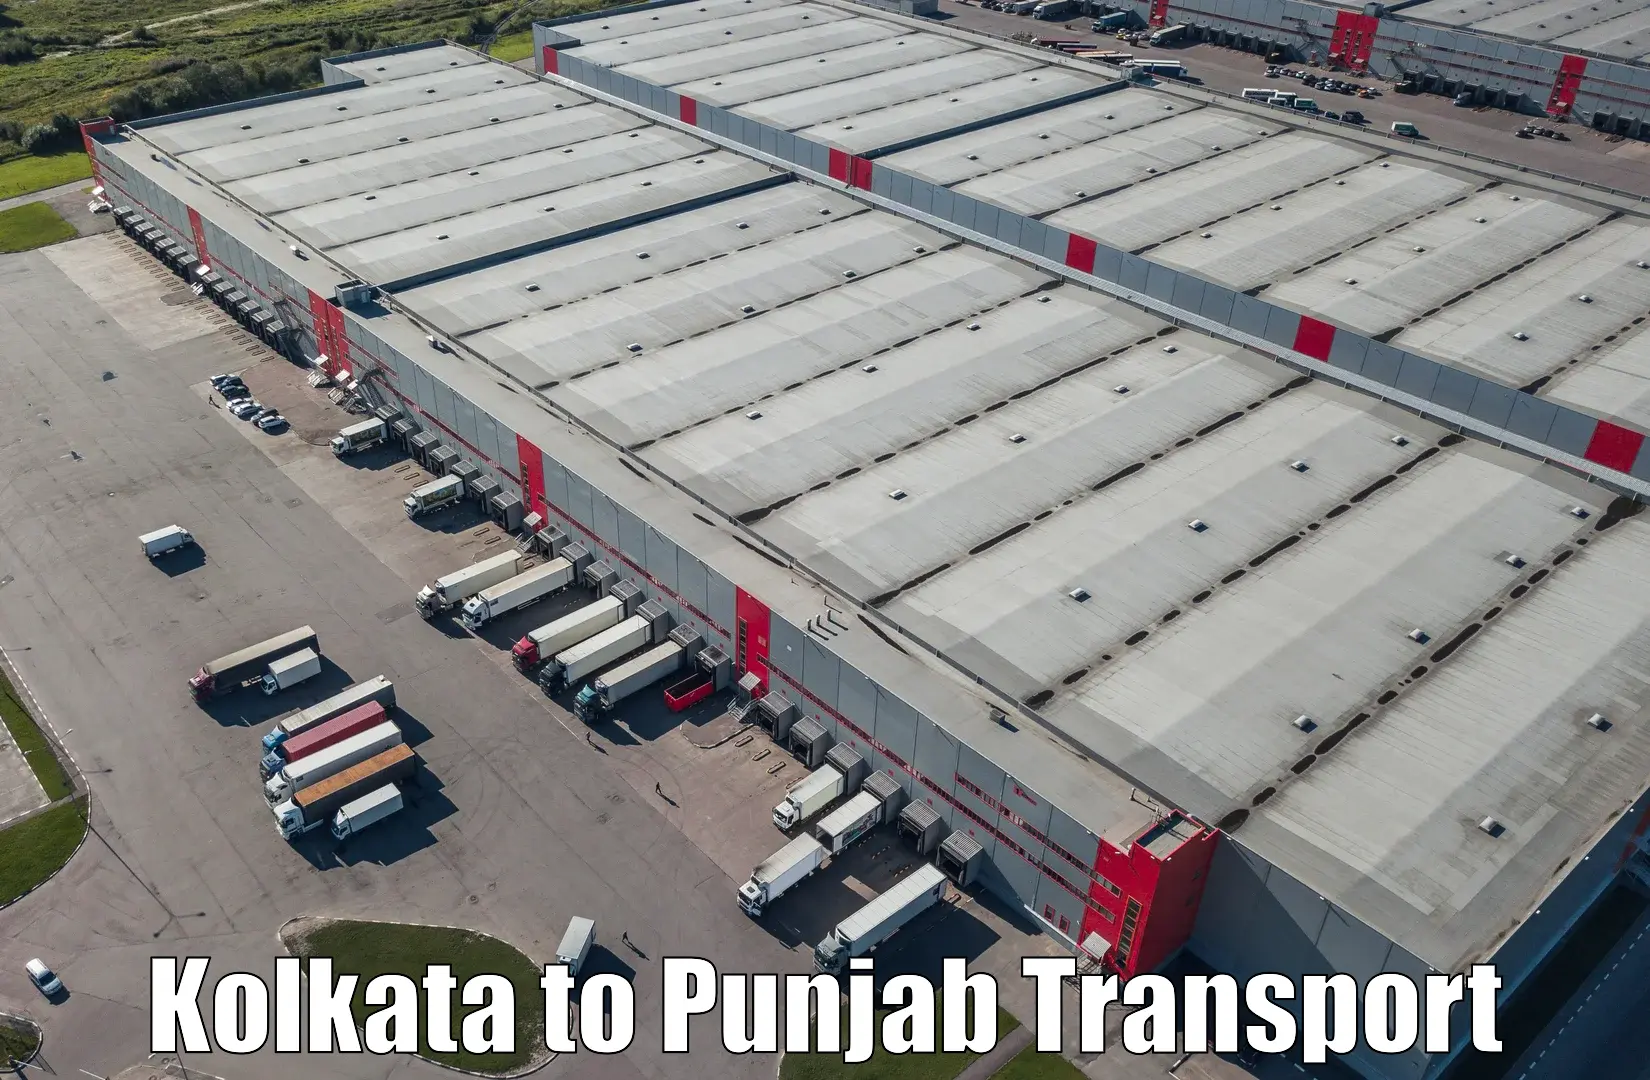 Nearby transport service Kolkata to Batala